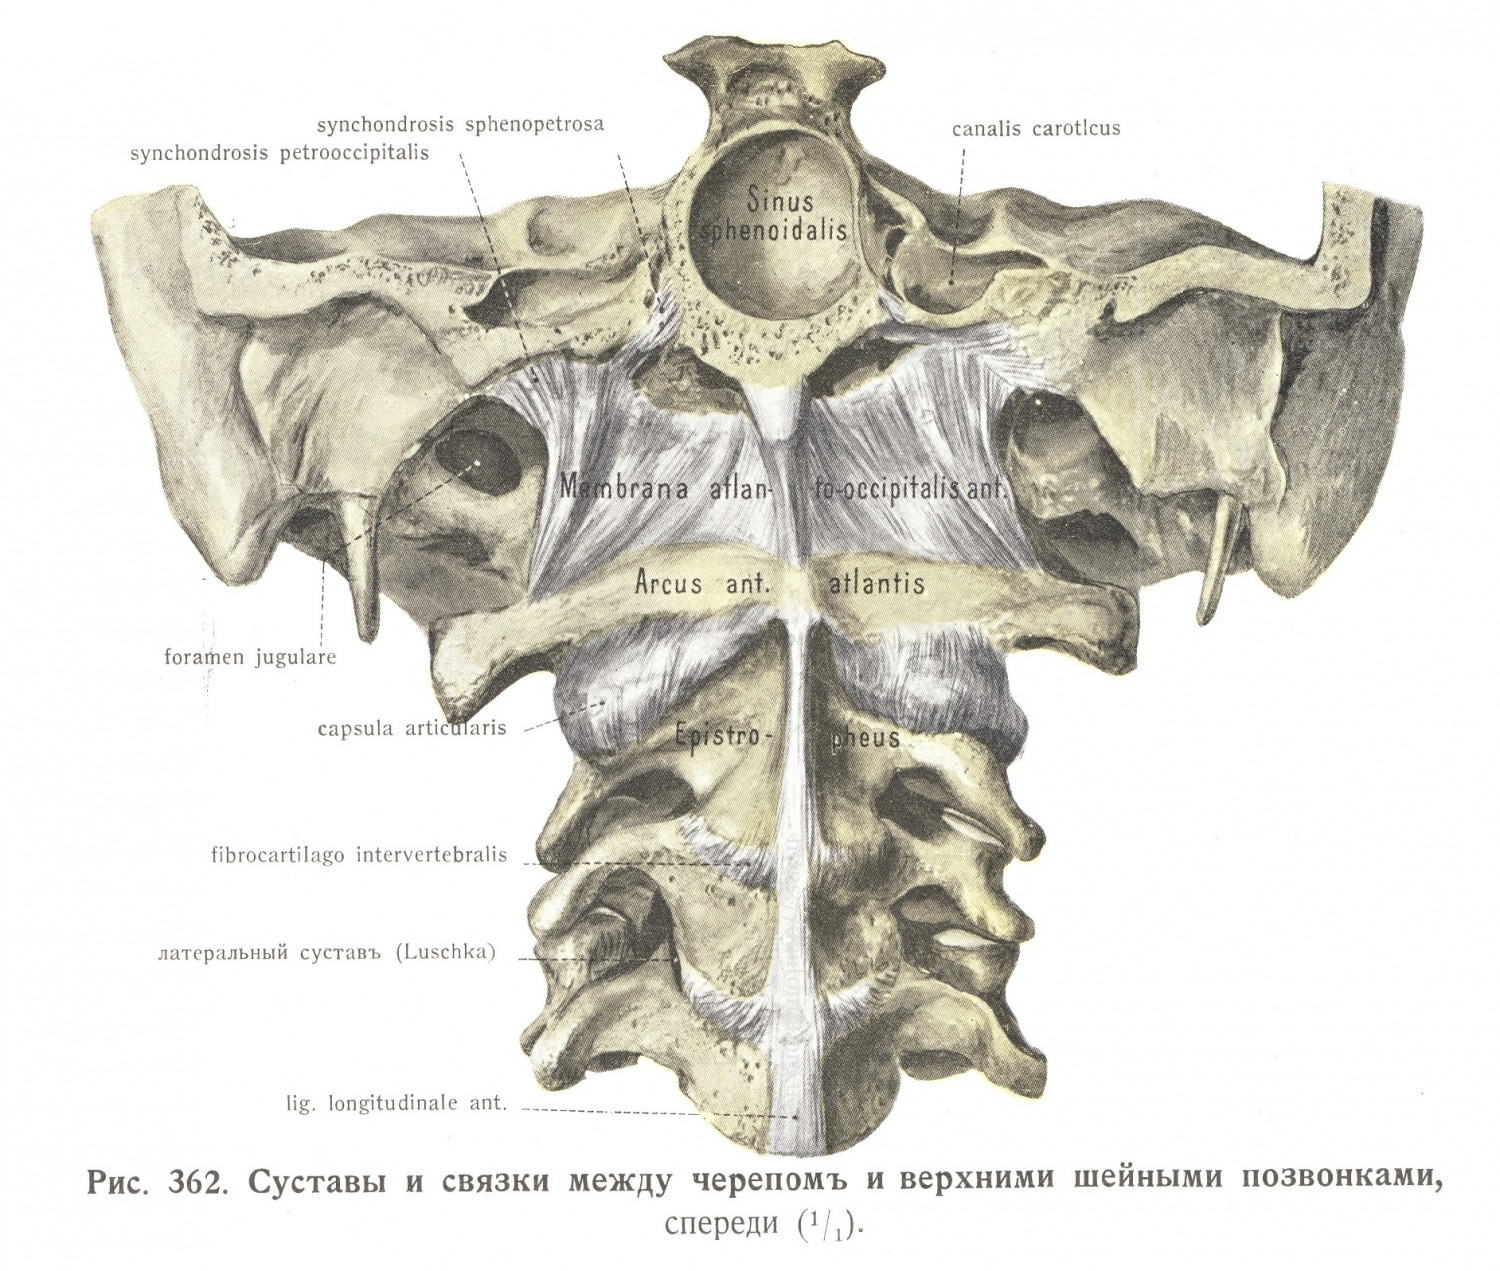 Суставы и связки между черепом и верхними шейными позвонками, спереди